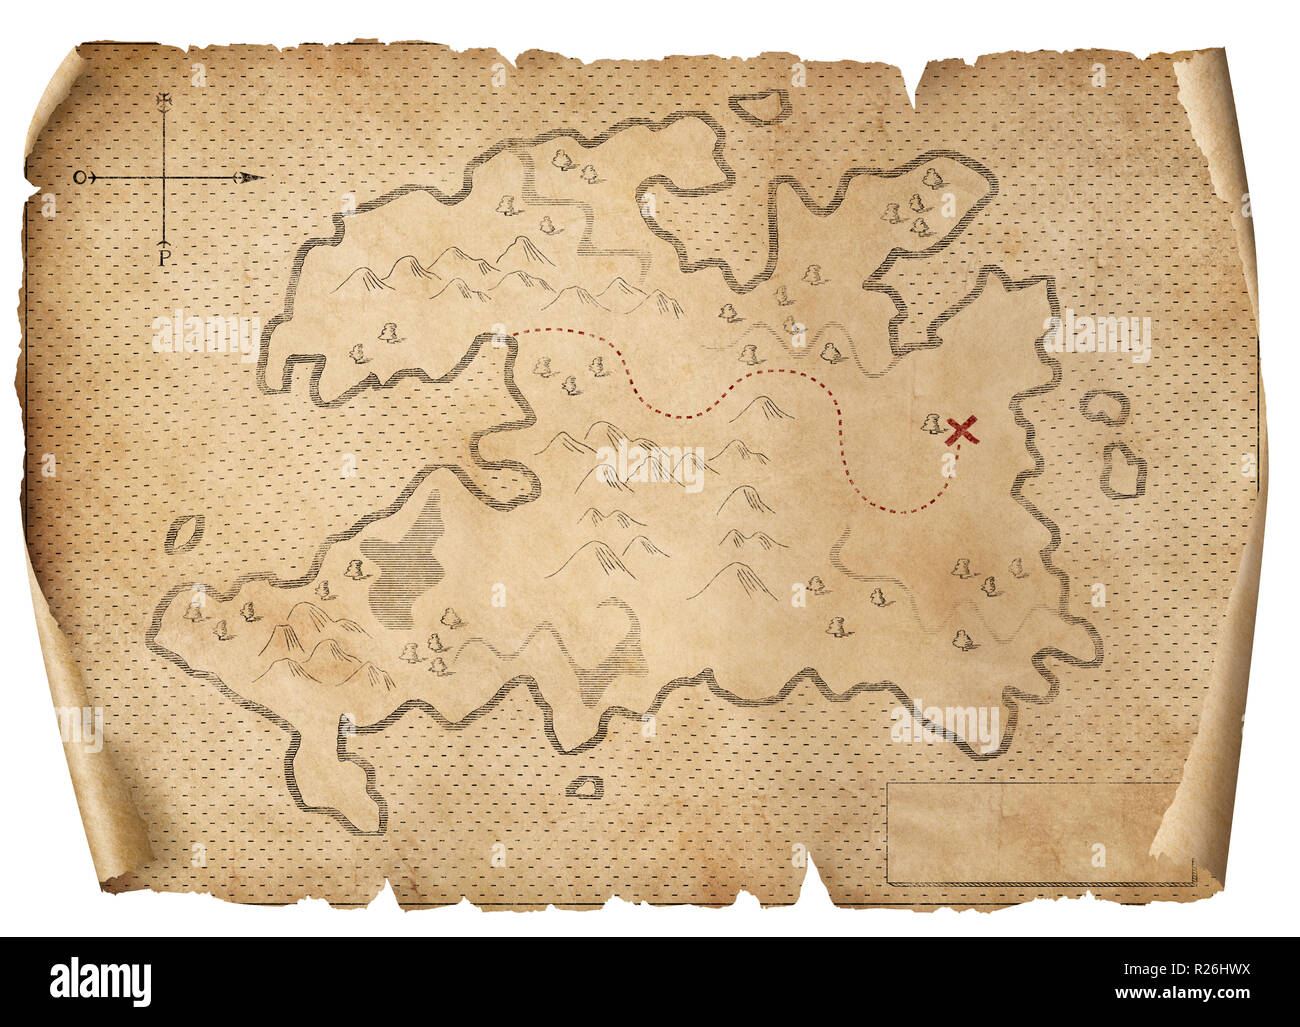 Schatz mittelalterliche Karte isoliert 3 Abbildung d Stockfoto